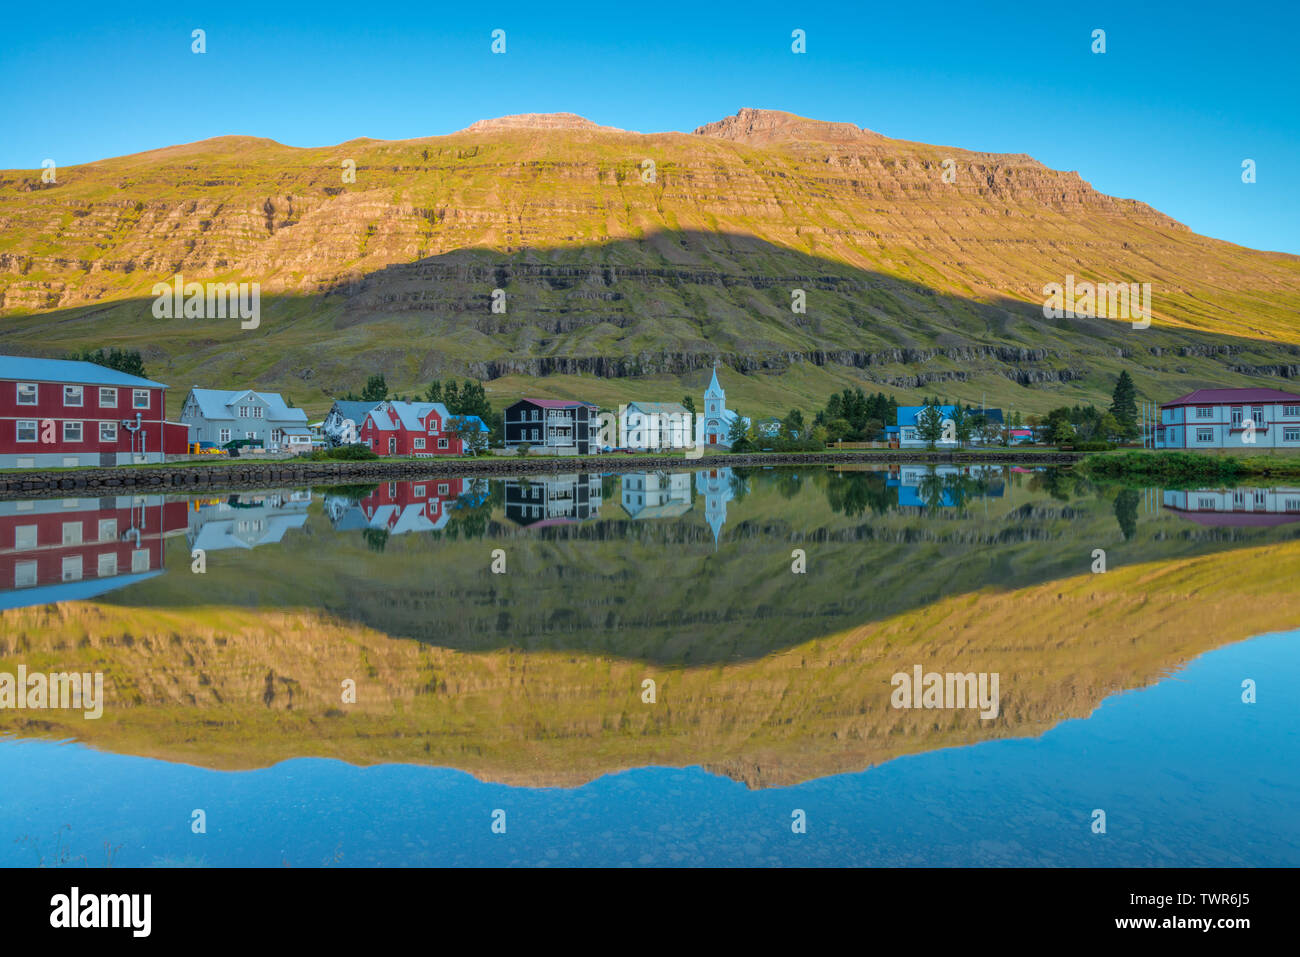 La réflexion de l'eau parfaite, image en miroir parfait d'un fjord islandais town dans l'eau, le lever du soleil avec une parfaite réflexion mountain shadow dans le fjord Banque D'Images